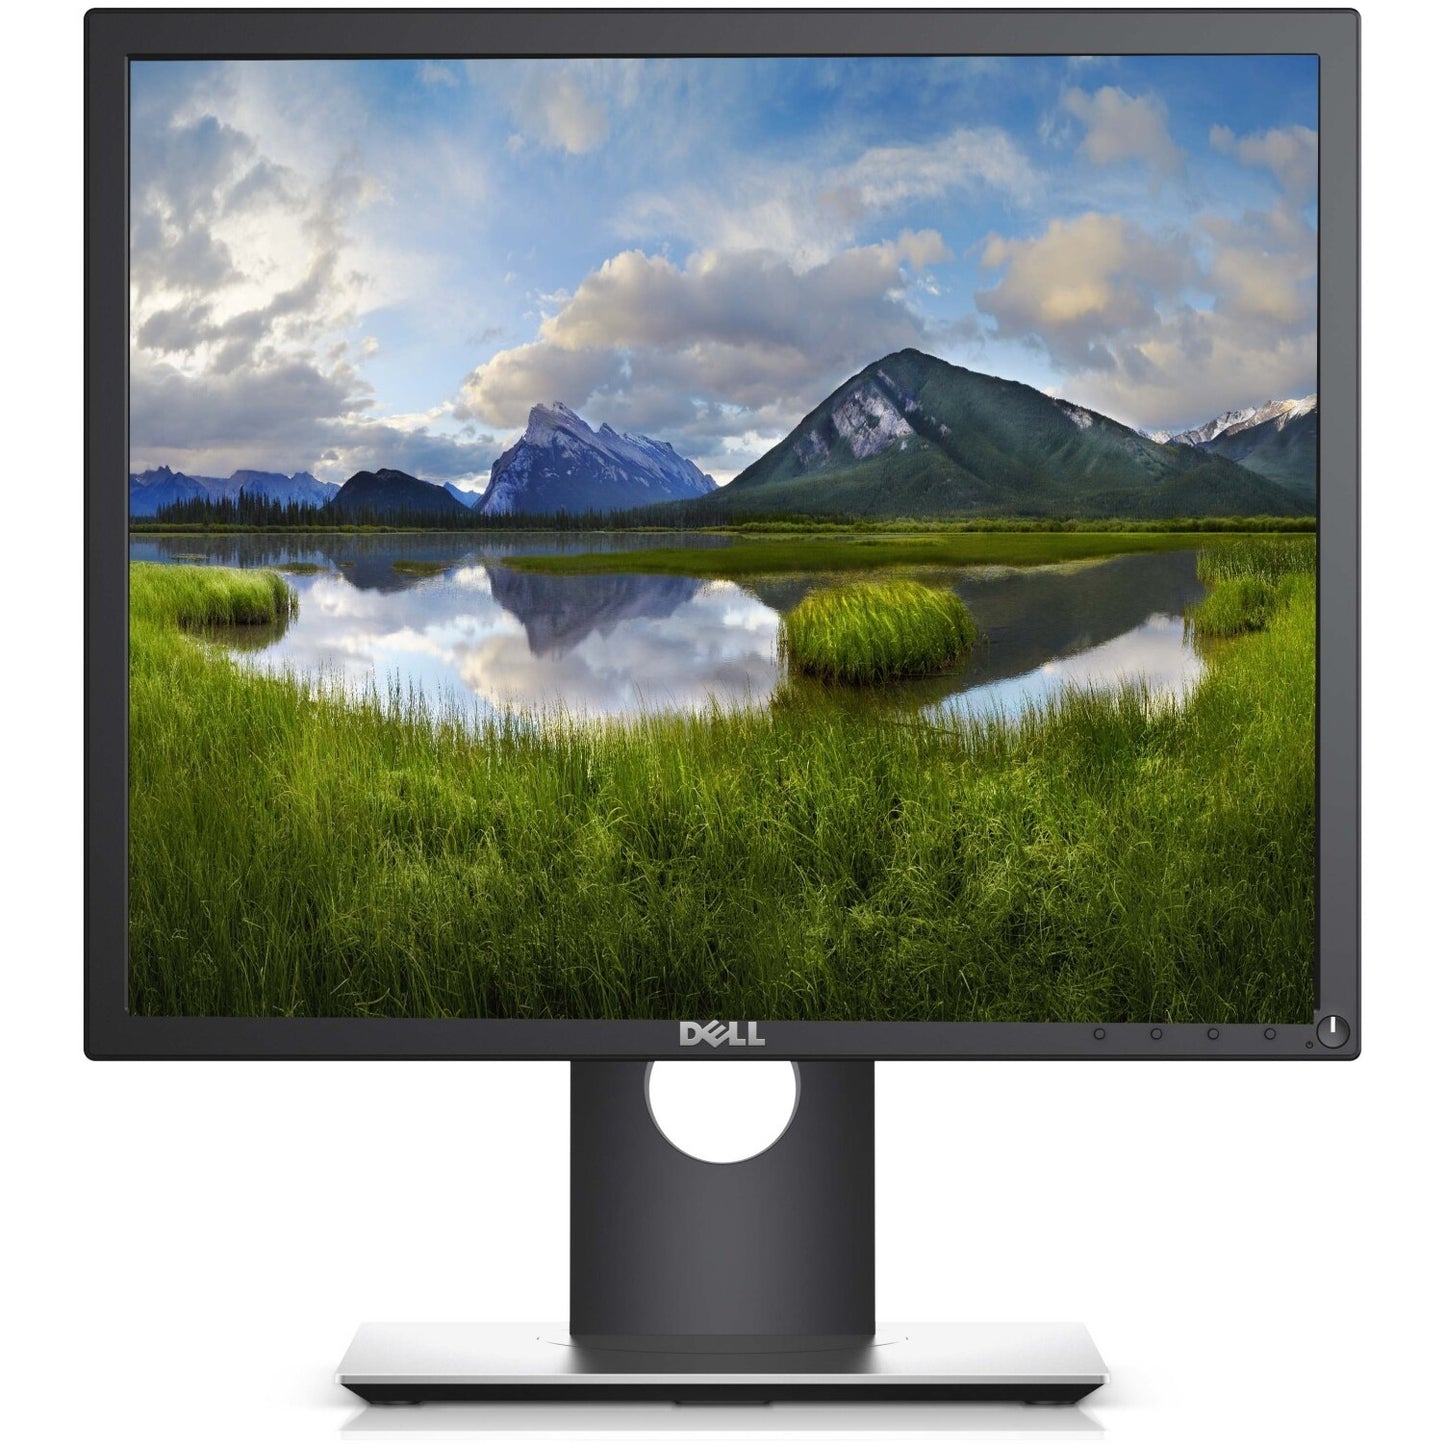 Dell 19" Monitor #910SE